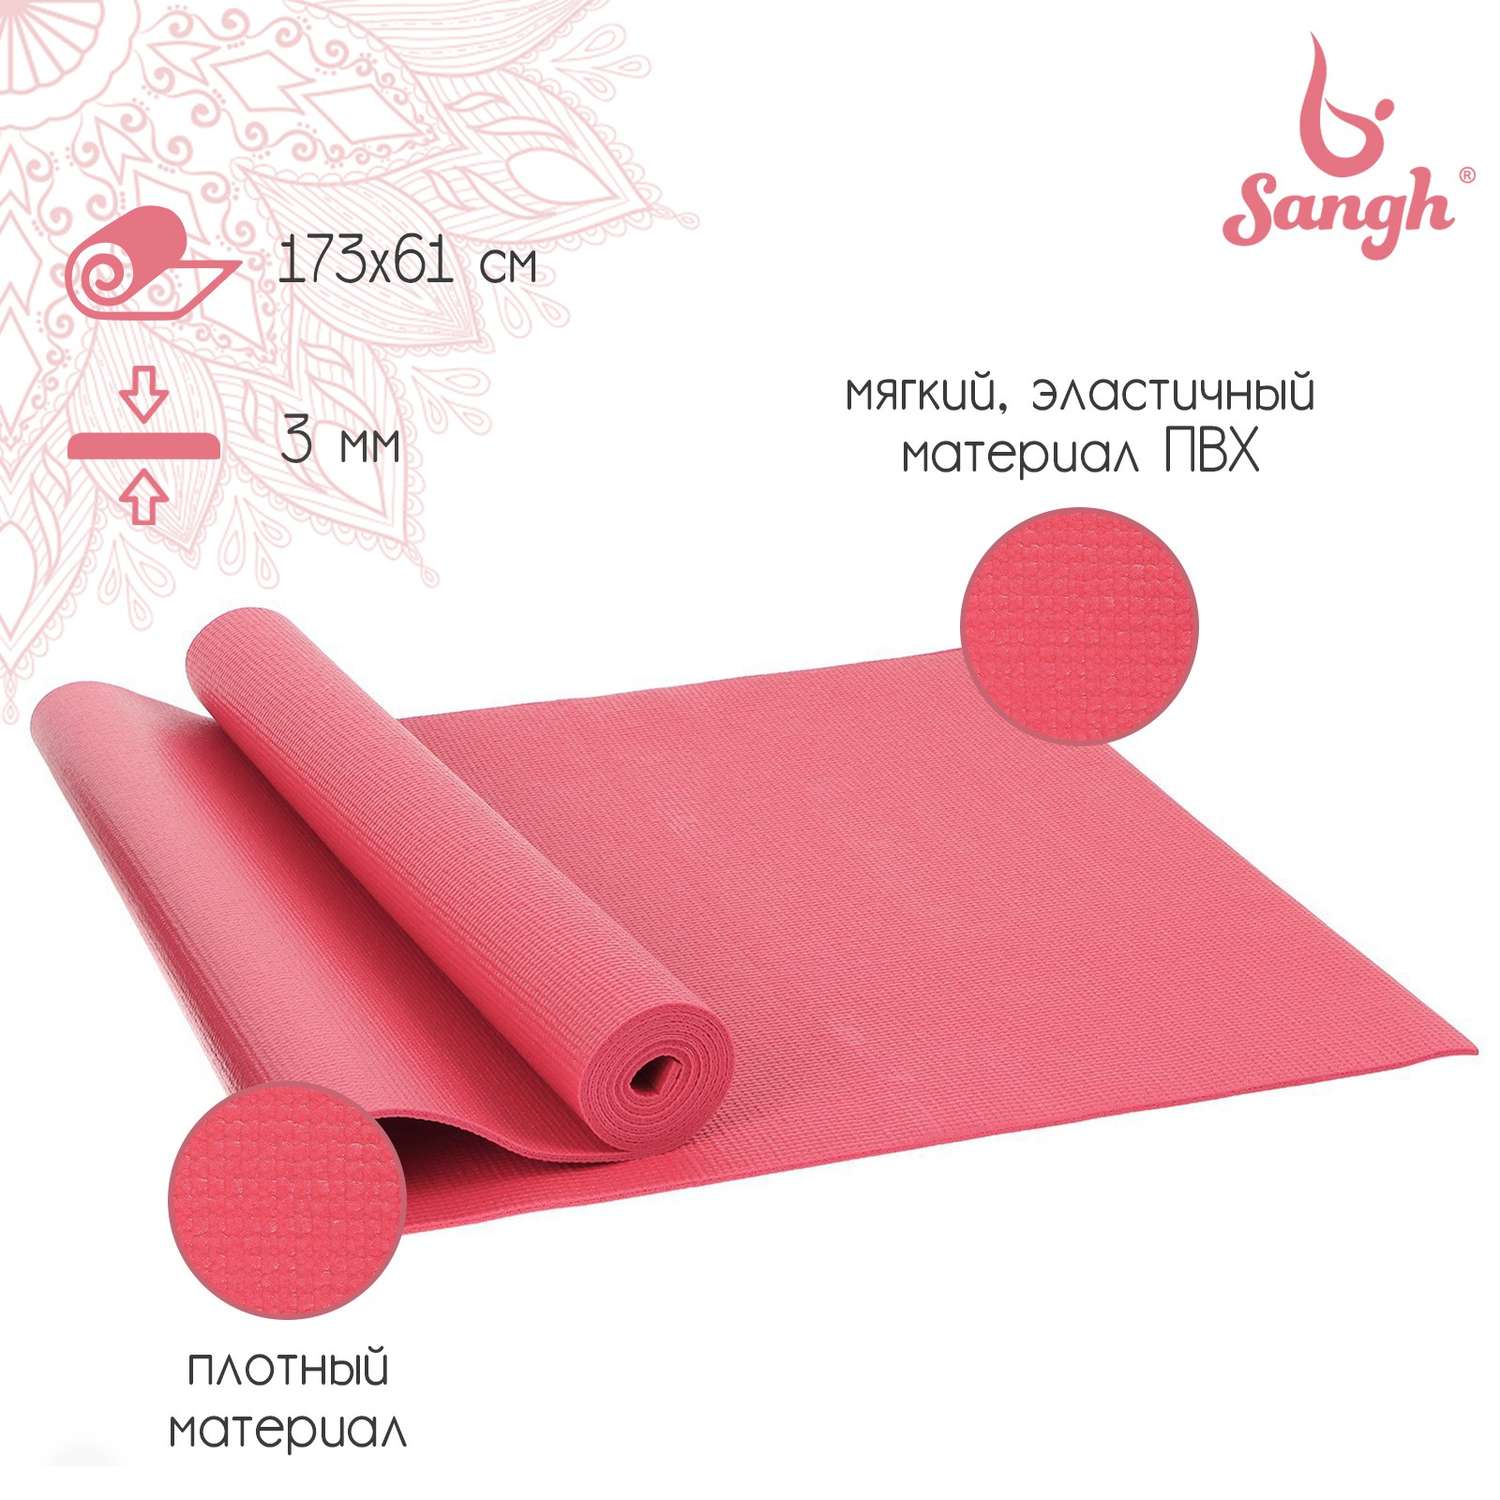 Коврик Sangh 173 х 61 х 0.3 см. цвет розовый - фото 1